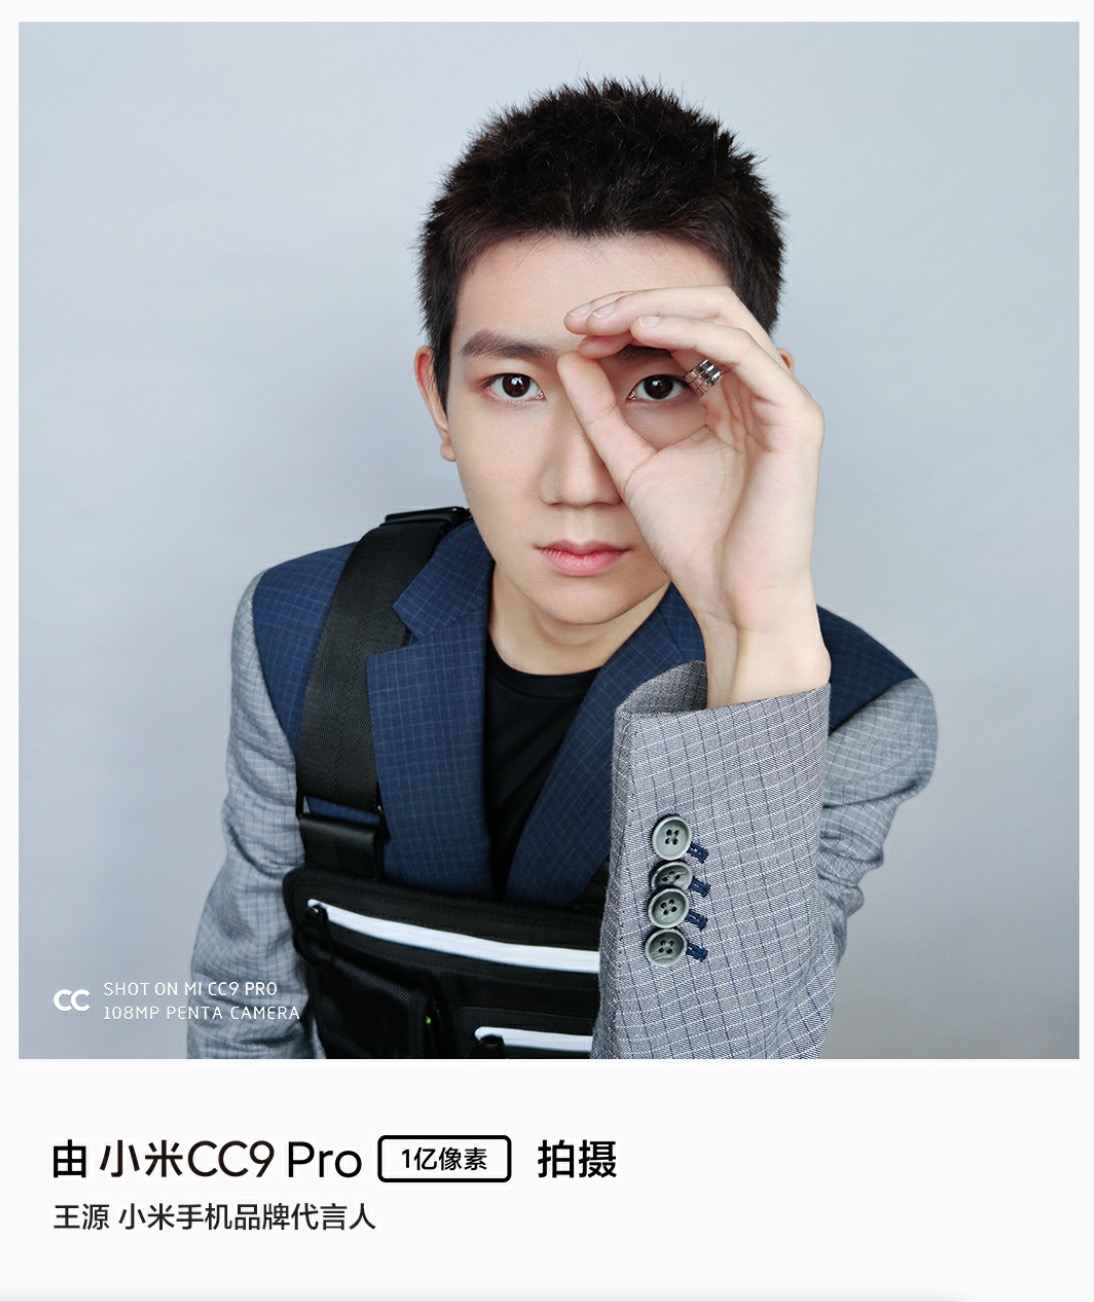 Xiaomi đăng tải ảnh chụp từ camera 108MP của
CC9 Pro: thấy cả ảnh phản chiếu trong mắt